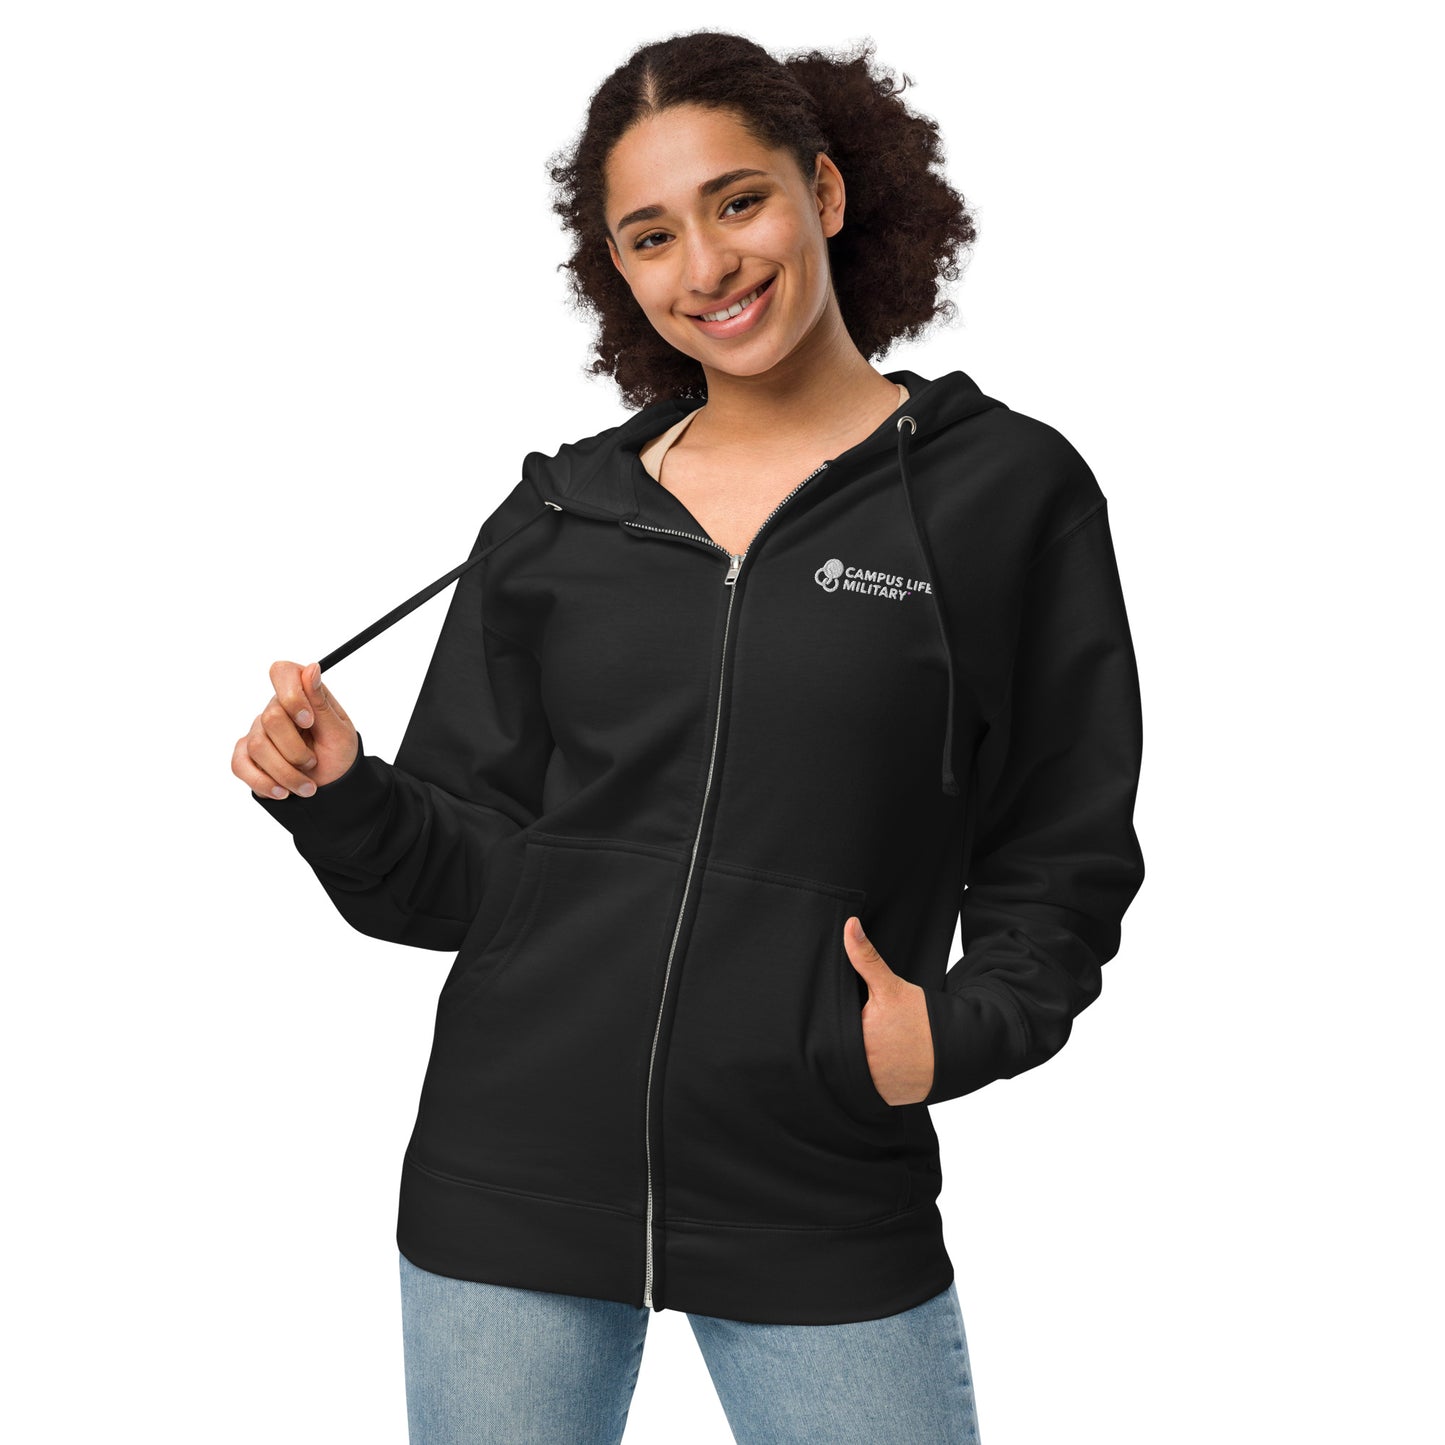 Campus Life Military Unisex fleece zip up hoodie